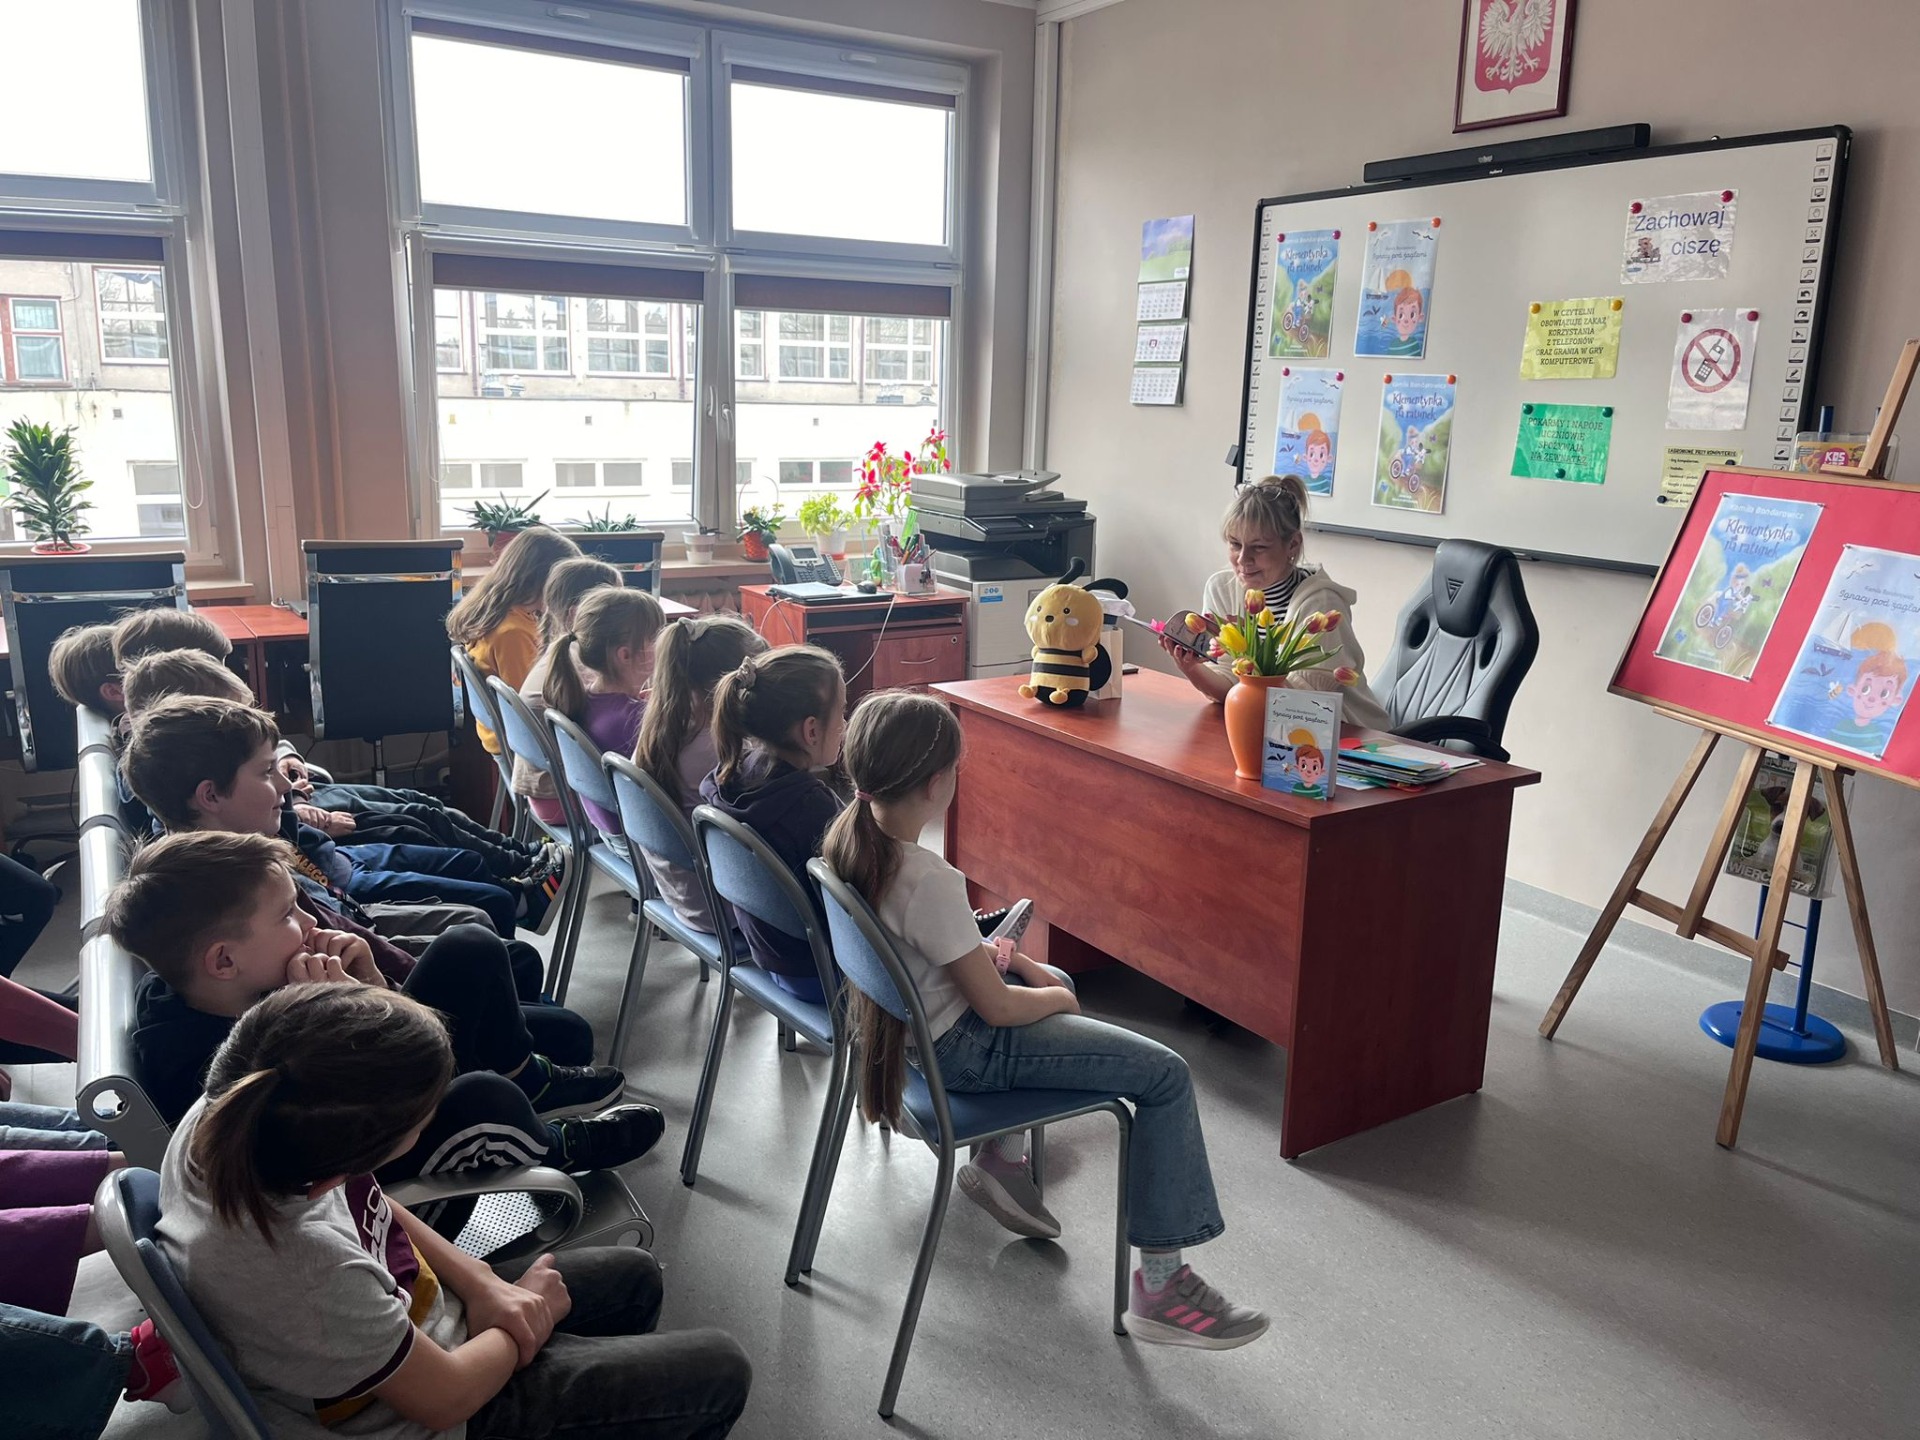 Na zdjęciu widzimy autorkę opowiadań dla dzieci, panią Kamilę Bondarowicz, która czyta uczniom fragmenty swojej książki Ignacy pod żaglami